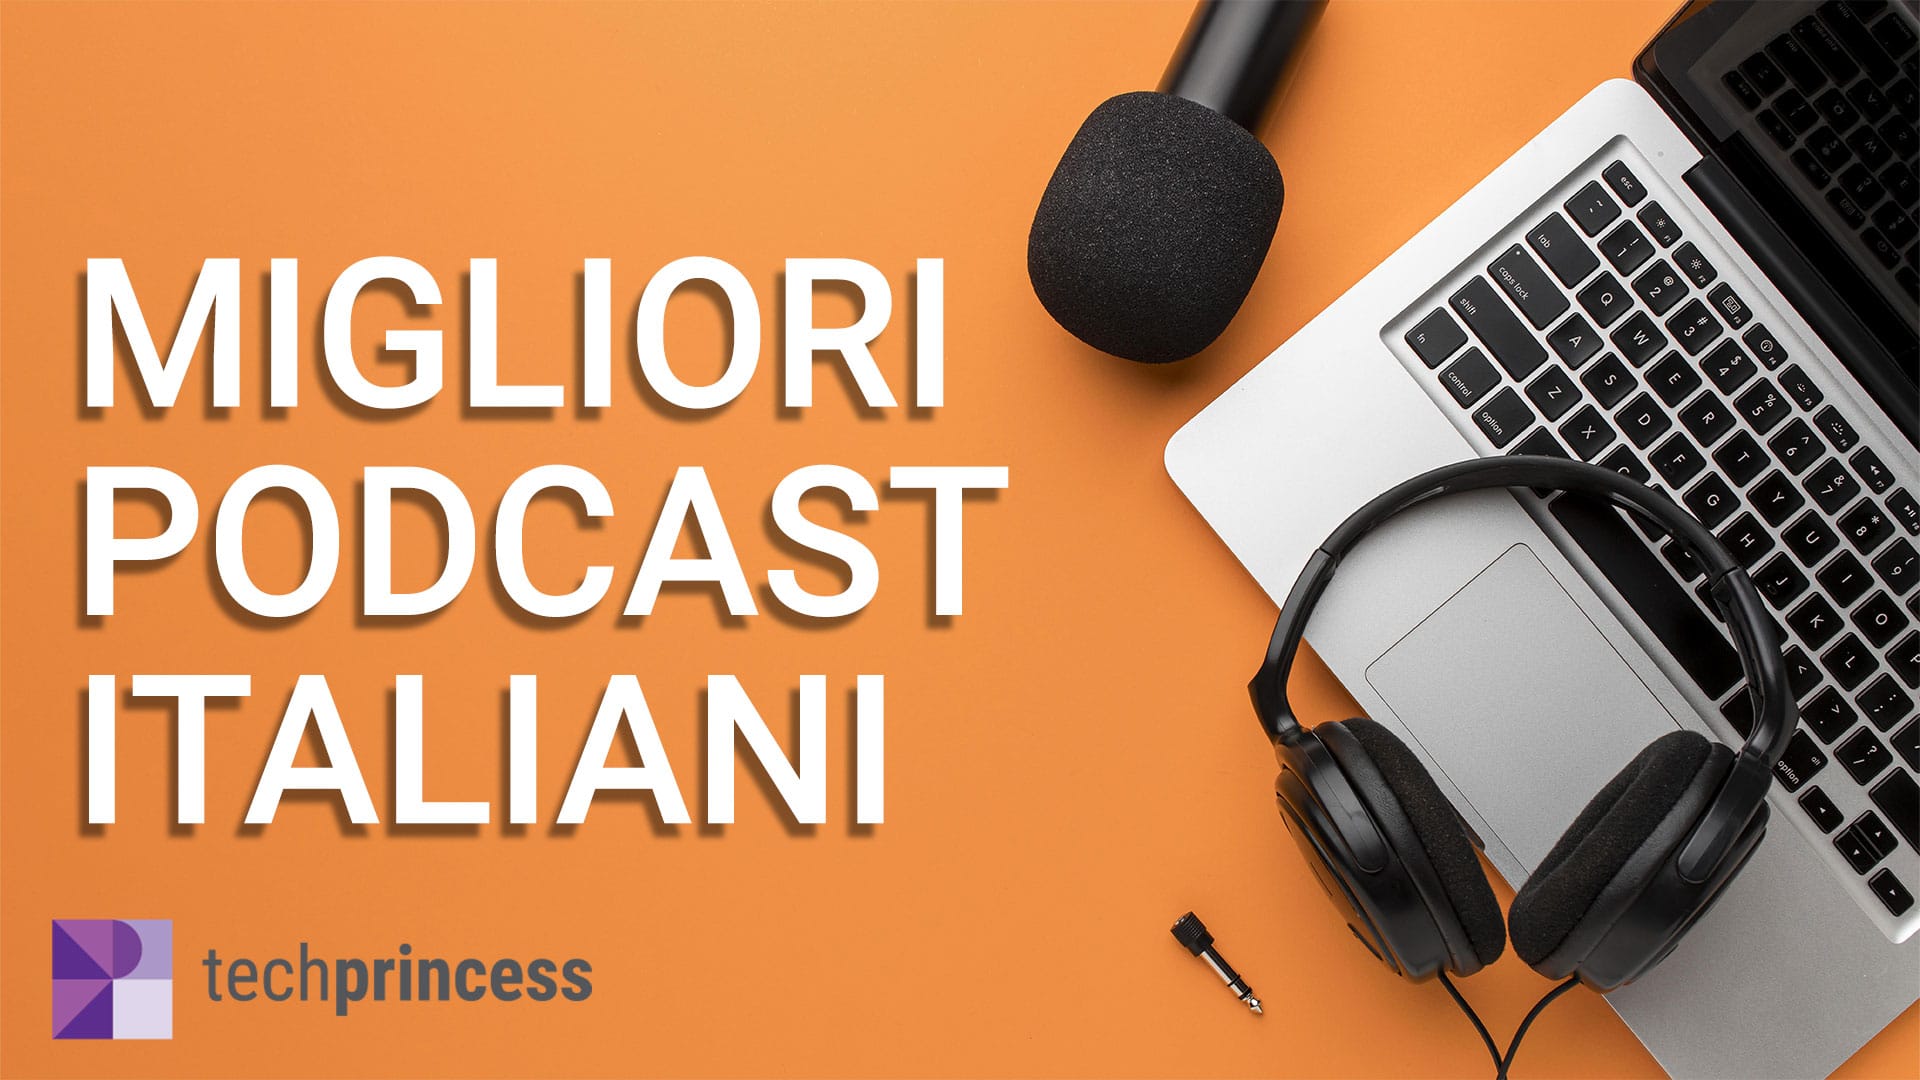 Migliori podcast italiani: +30 podcast che devi assolutamente ascoltare thumbnail